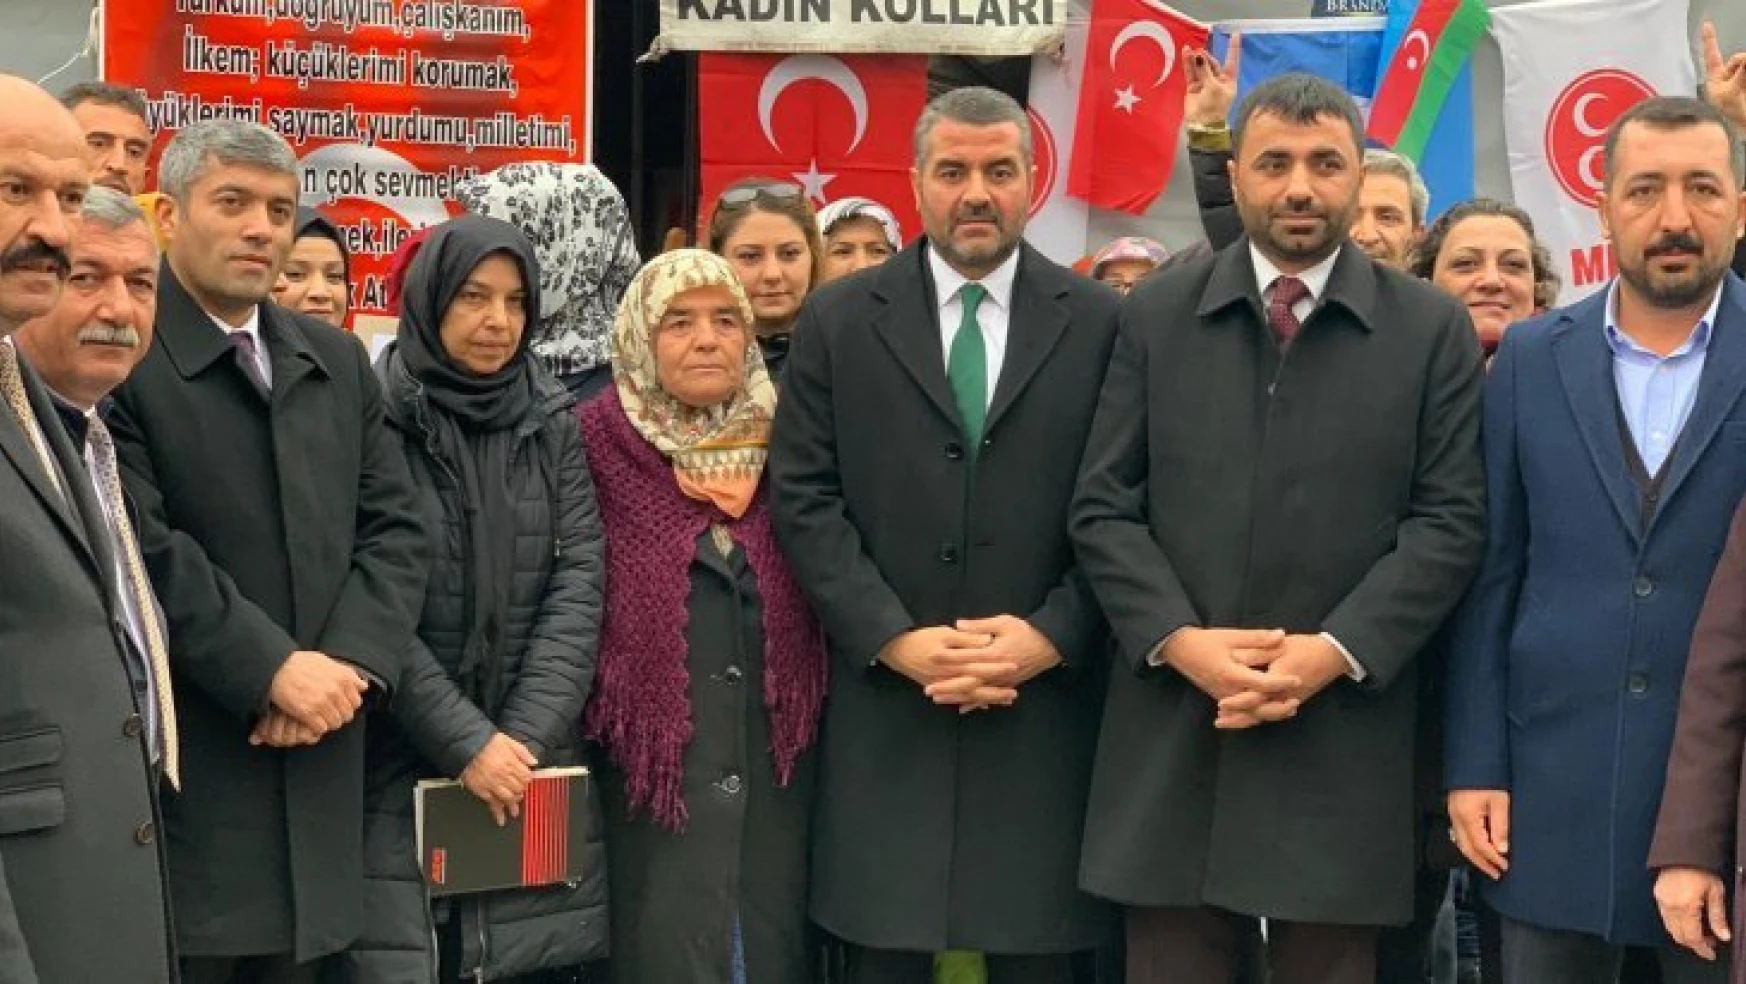 Avşar: Doğu Türkistan Türklüğün Kerbelasıdır